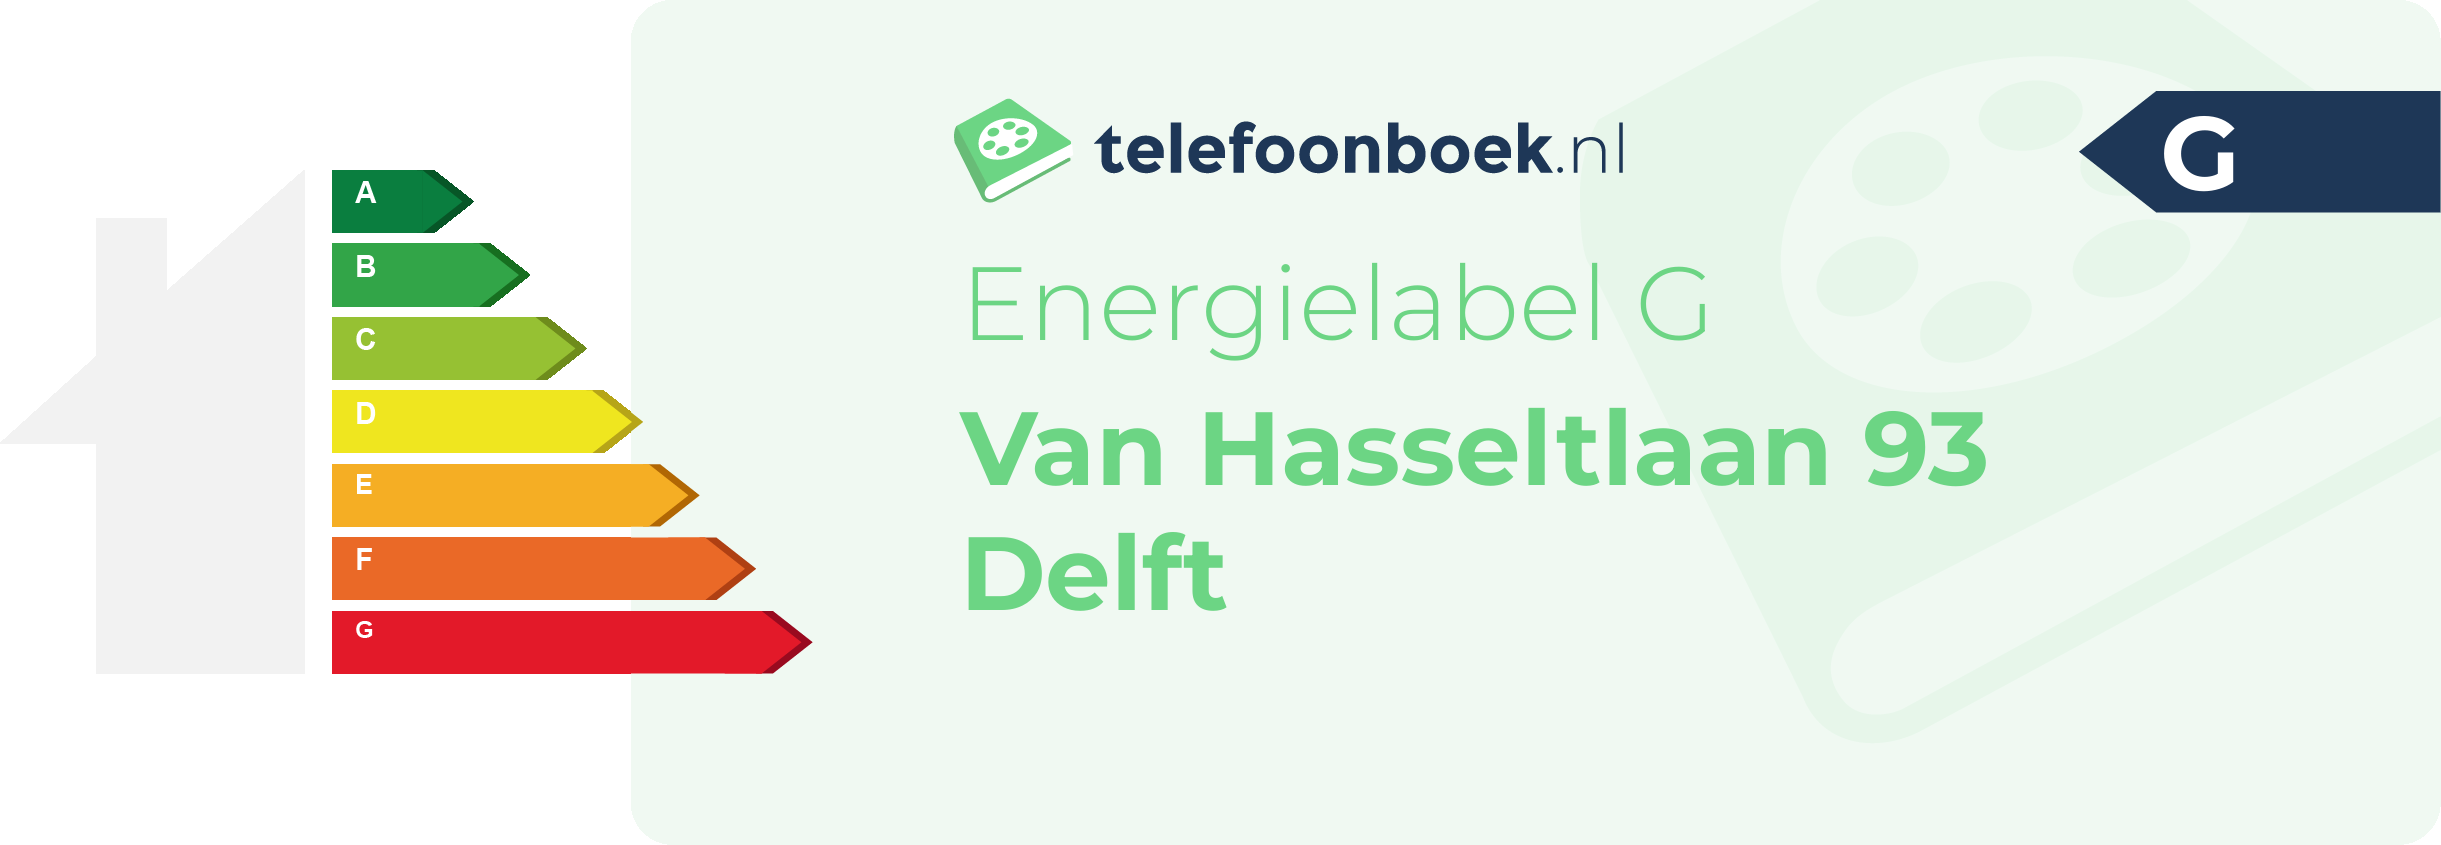 Energielabel Van Hasseltlaan 93 Delft